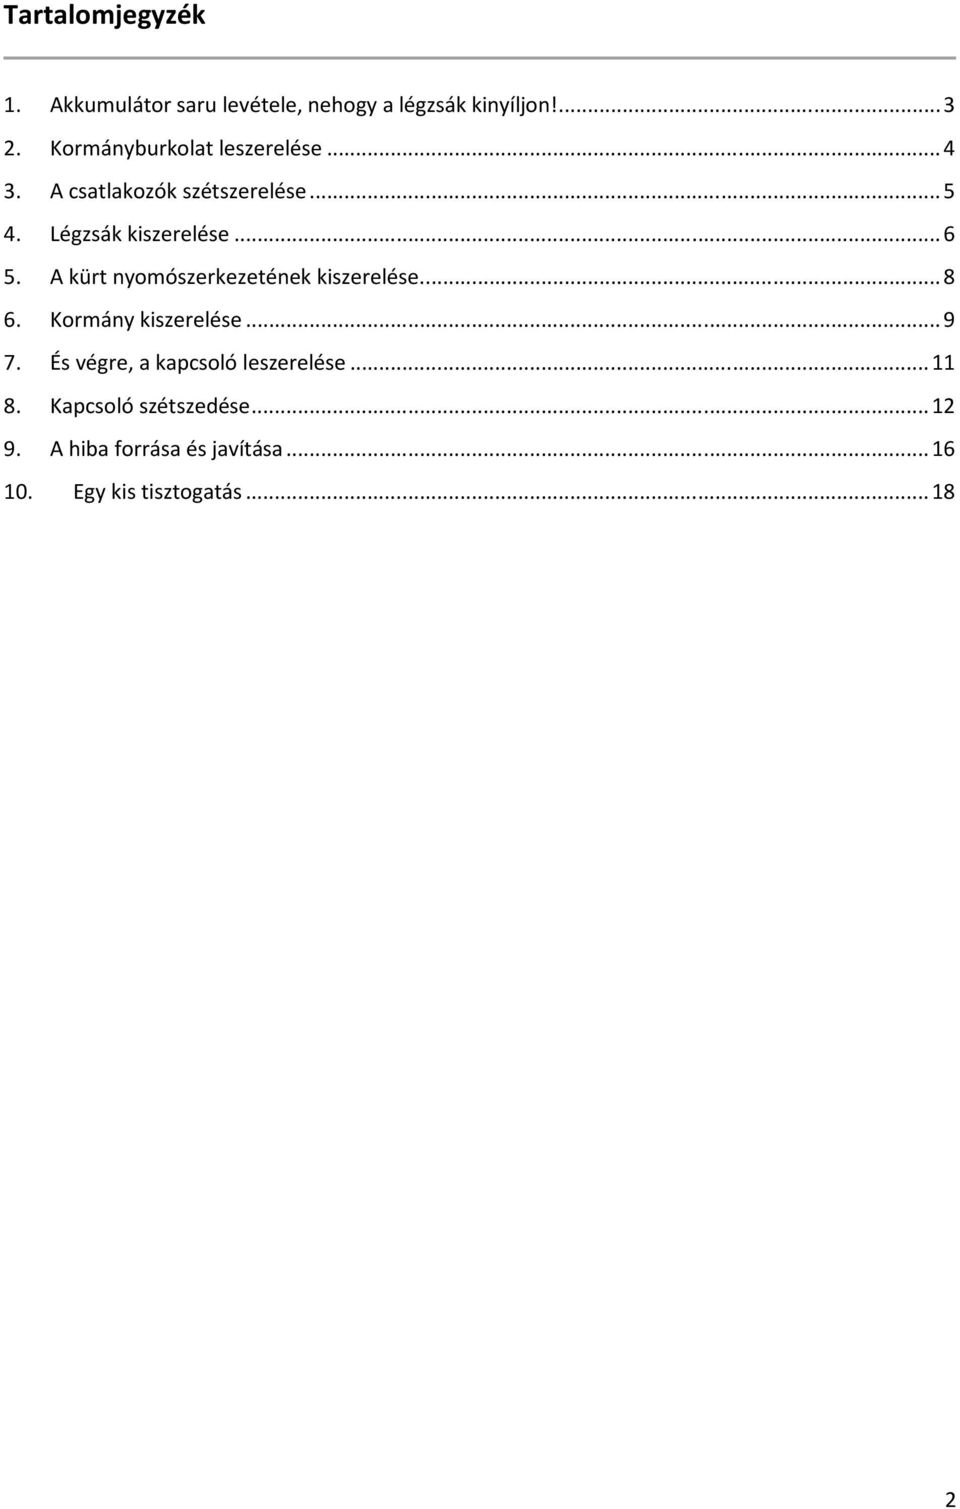 Peugeot 307 indexkapcsoló javítása - PDF Ingyenes letöltés